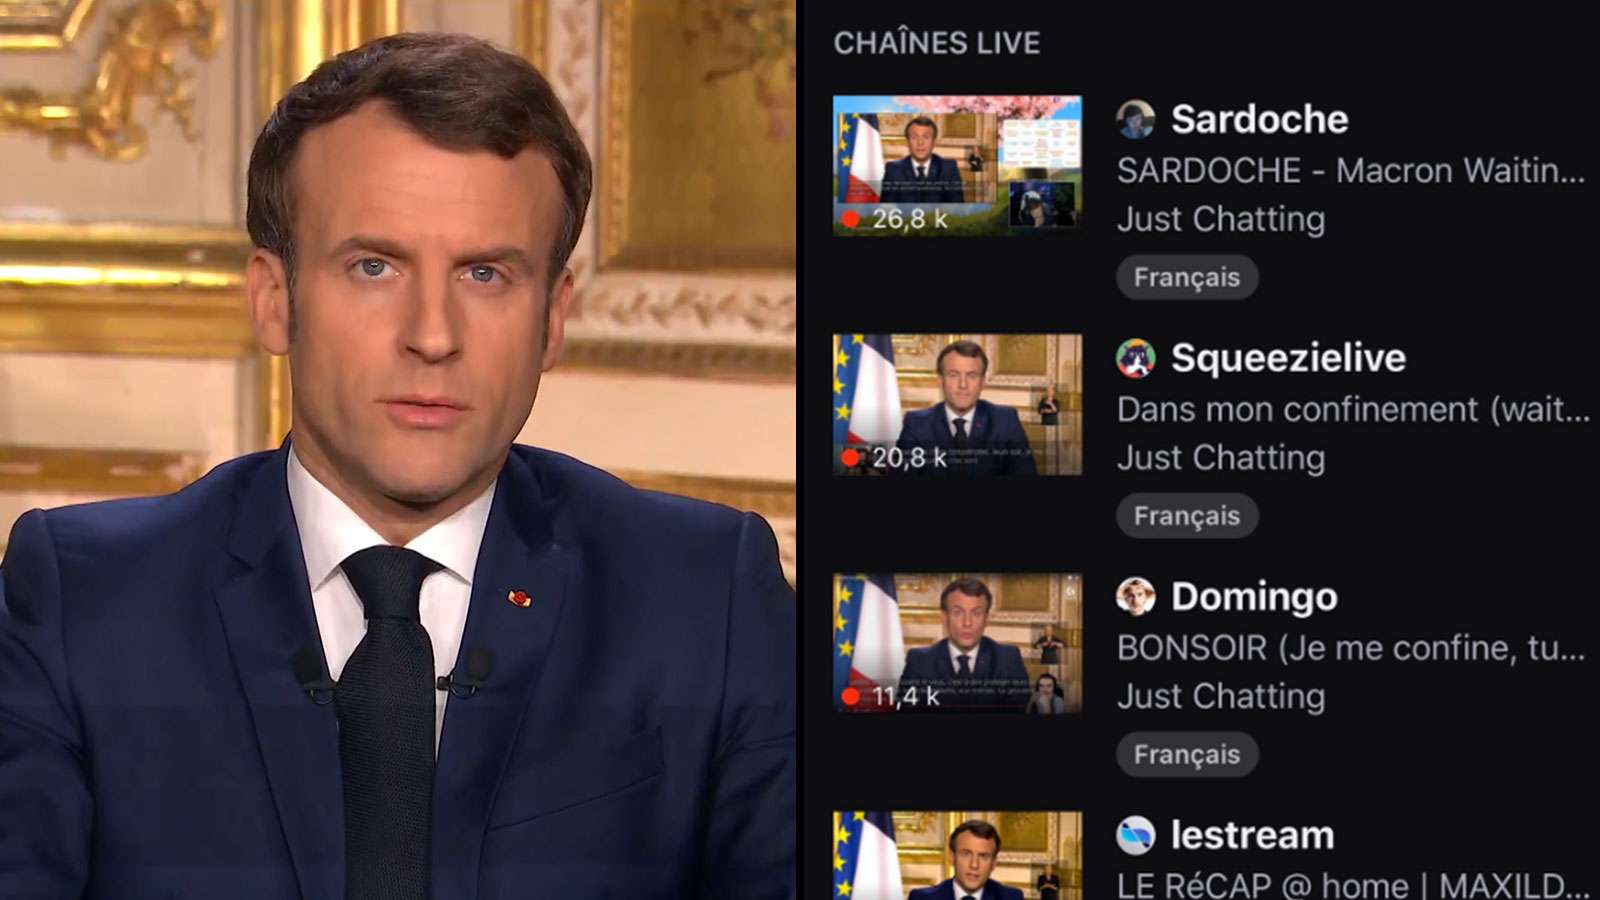 Le discours d'Emmanuel Macron était très présent sur Twitch